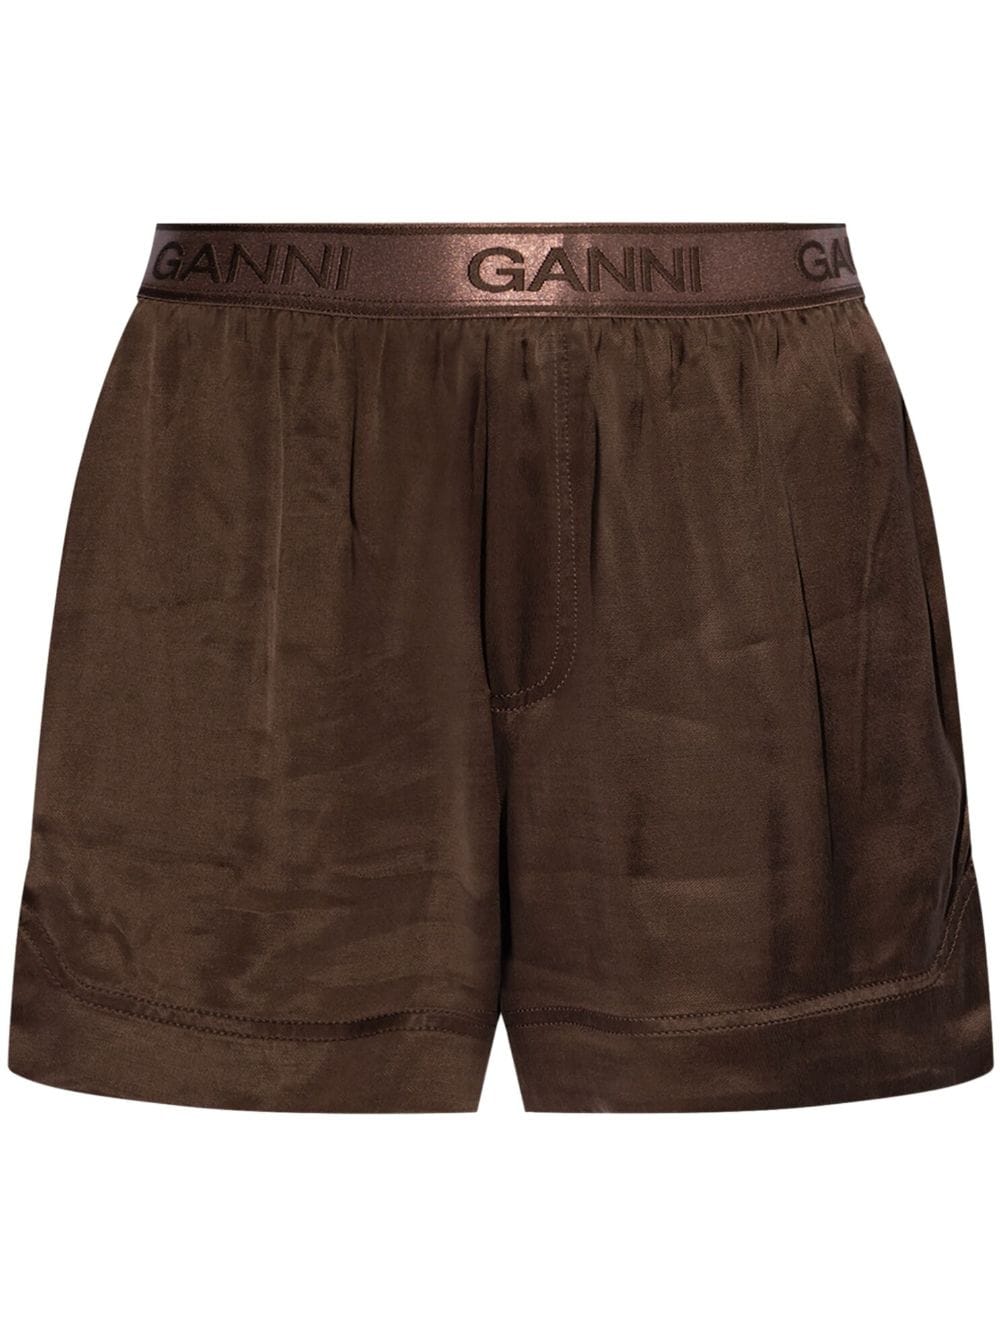 GANNI logo waistband shorts - Brown von GANNI